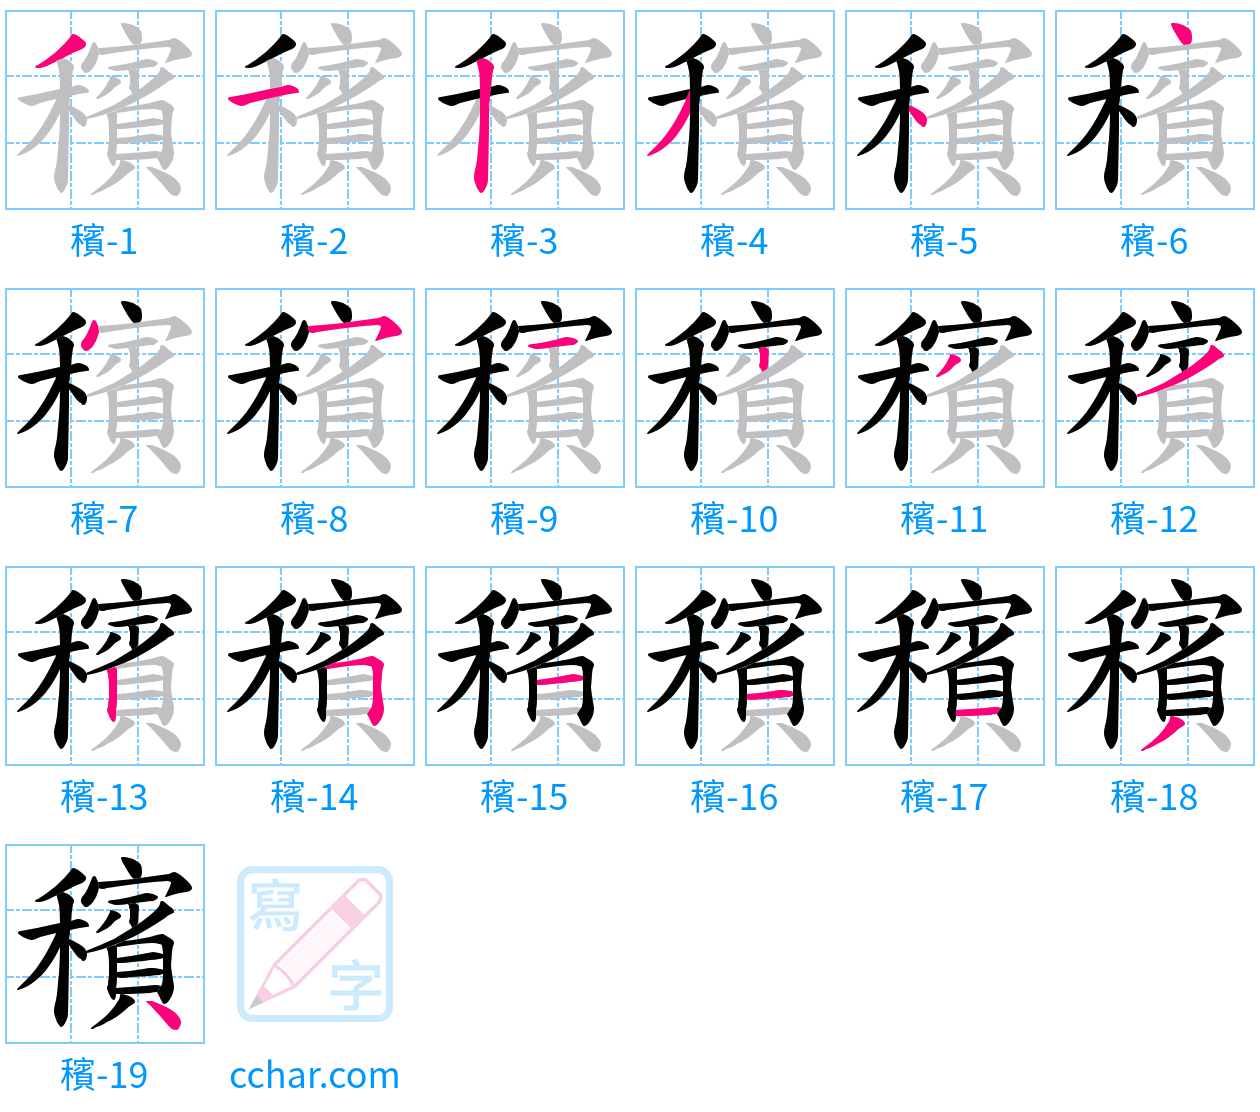 穦 stroke order step-by-step diagram